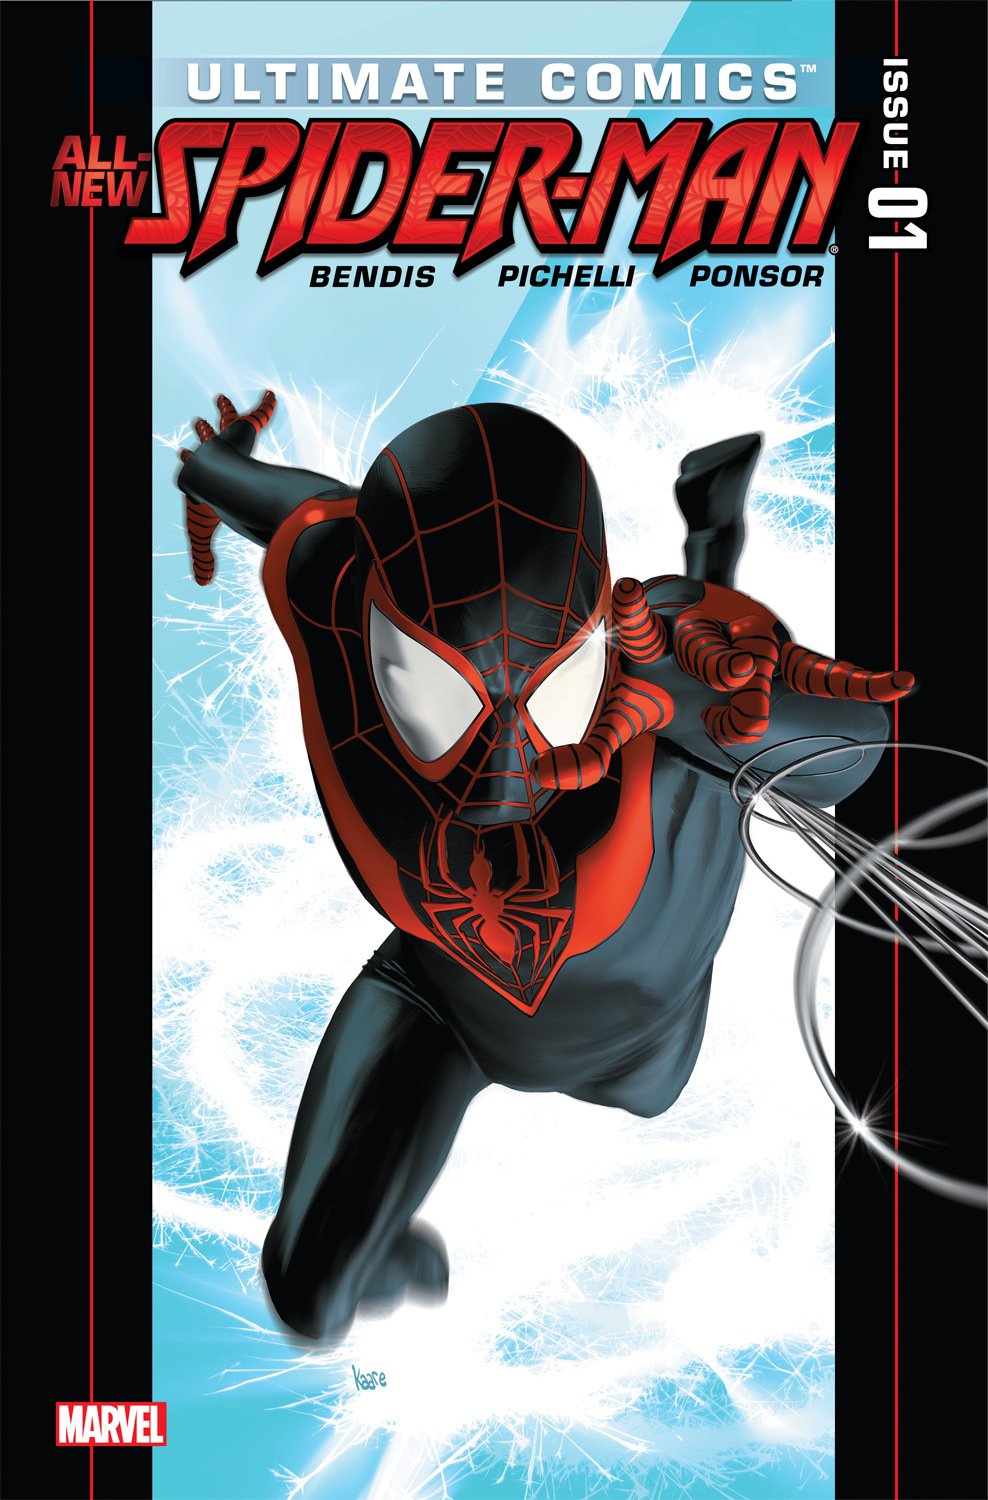 Portada de Ultimate Comics - Todo nuevo Spider-Man # 1